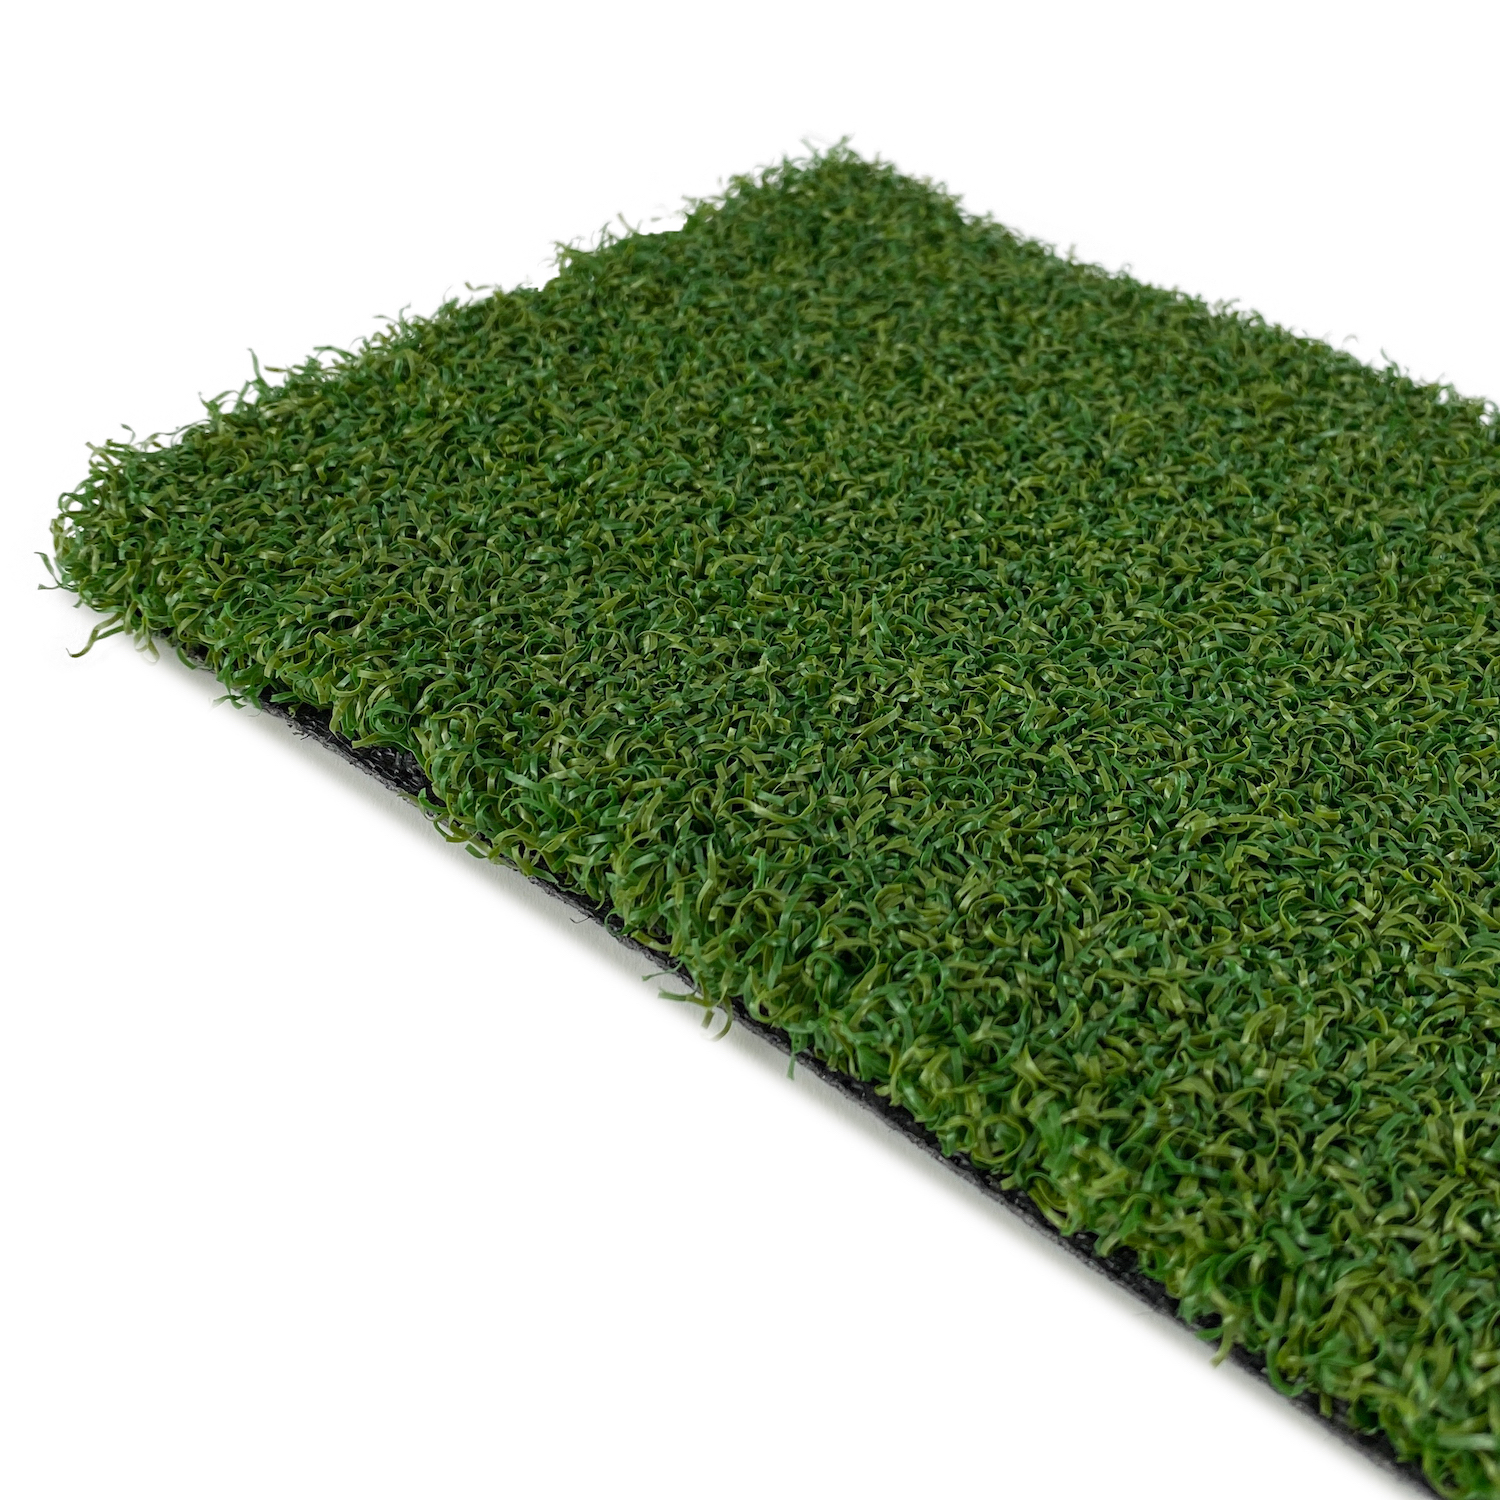 Pro Putt artificial grass